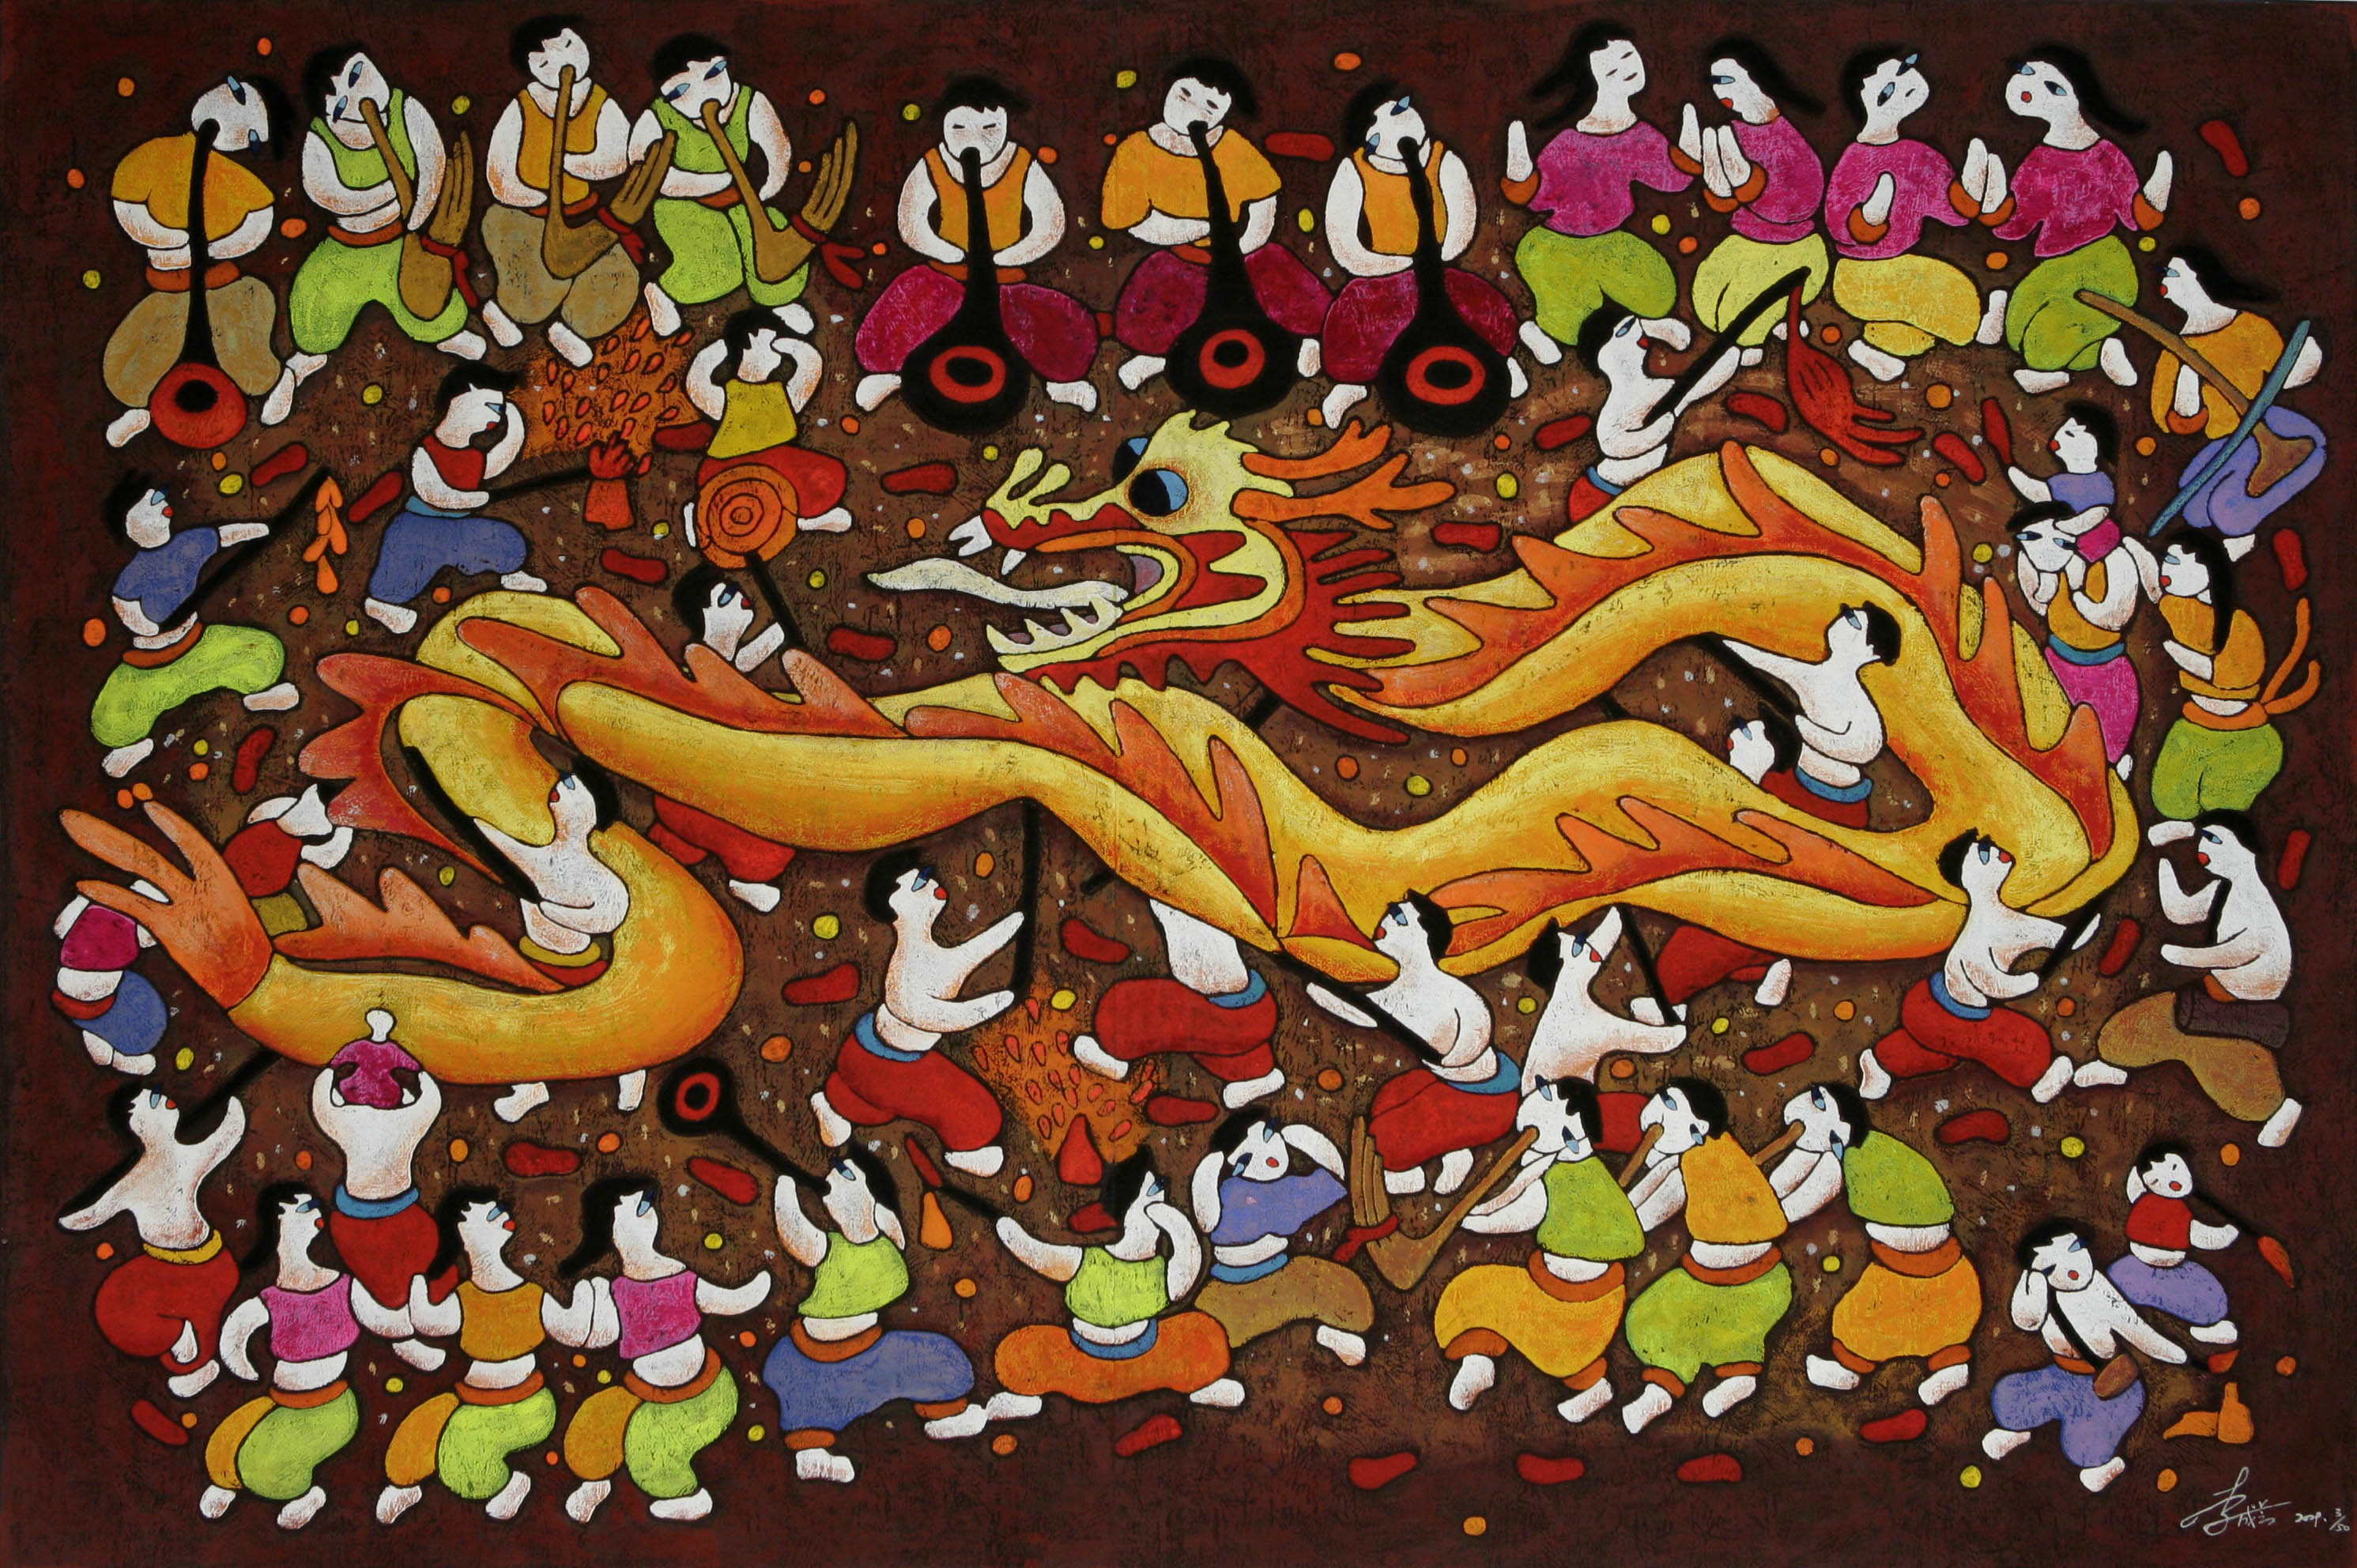 《龙舞人欢》 李成芝 粉印版画 127cmx87cm 2009年